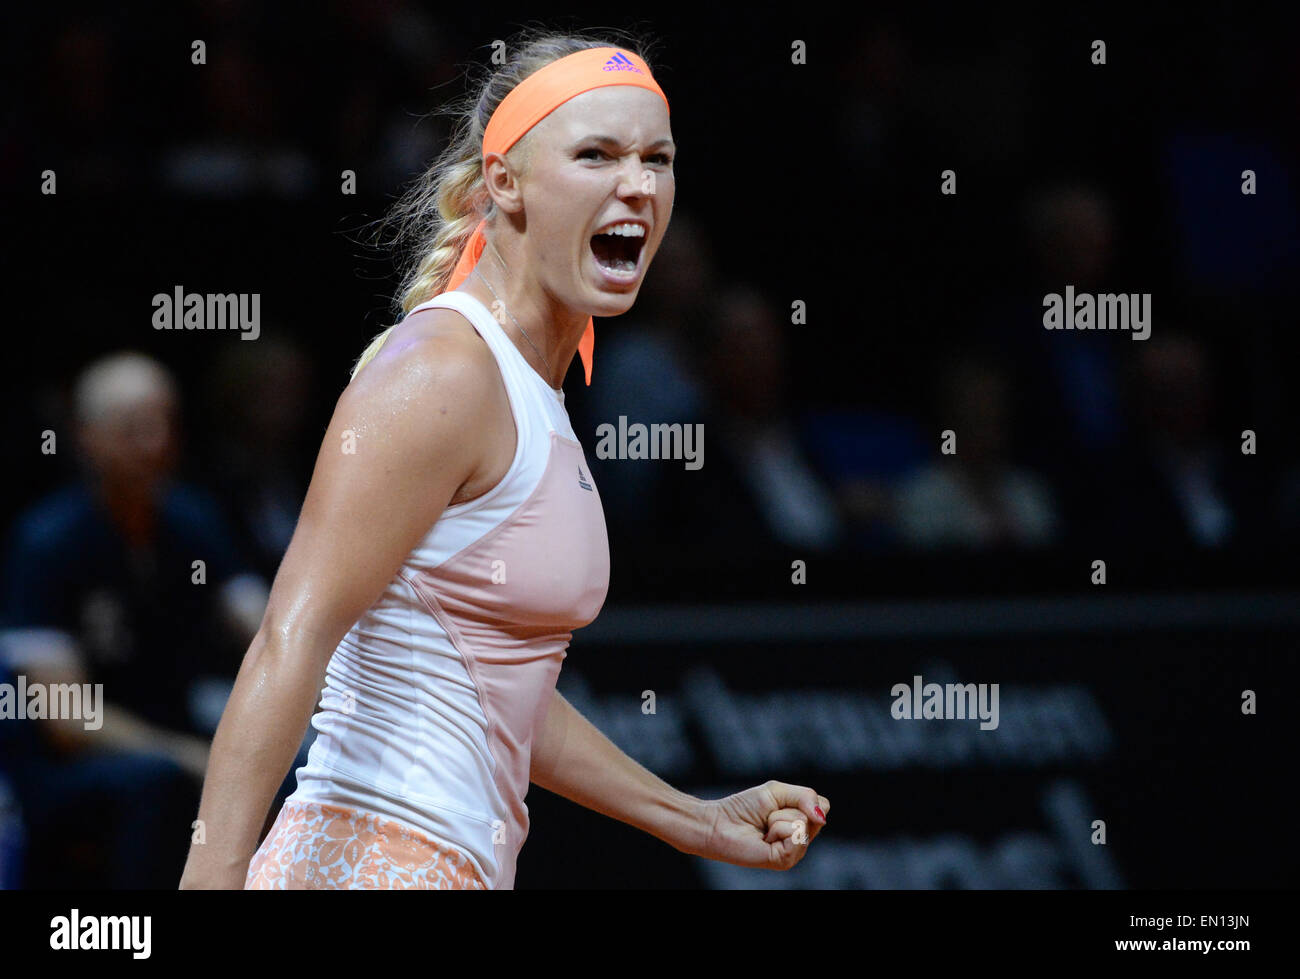 Stuttgart, Allemagne. Apr 25, 2015. Caroline Wozniacki de Danemark célèbre sa victoire contre la Roumanie : au cours de la demi-finale de l'ATA de tournoi de tennis à Stuttgart, Allemagne, 25 avril 2015. PHOTO : MARIJAN MURAT/dpa/Alamy Live News Banque D'Images